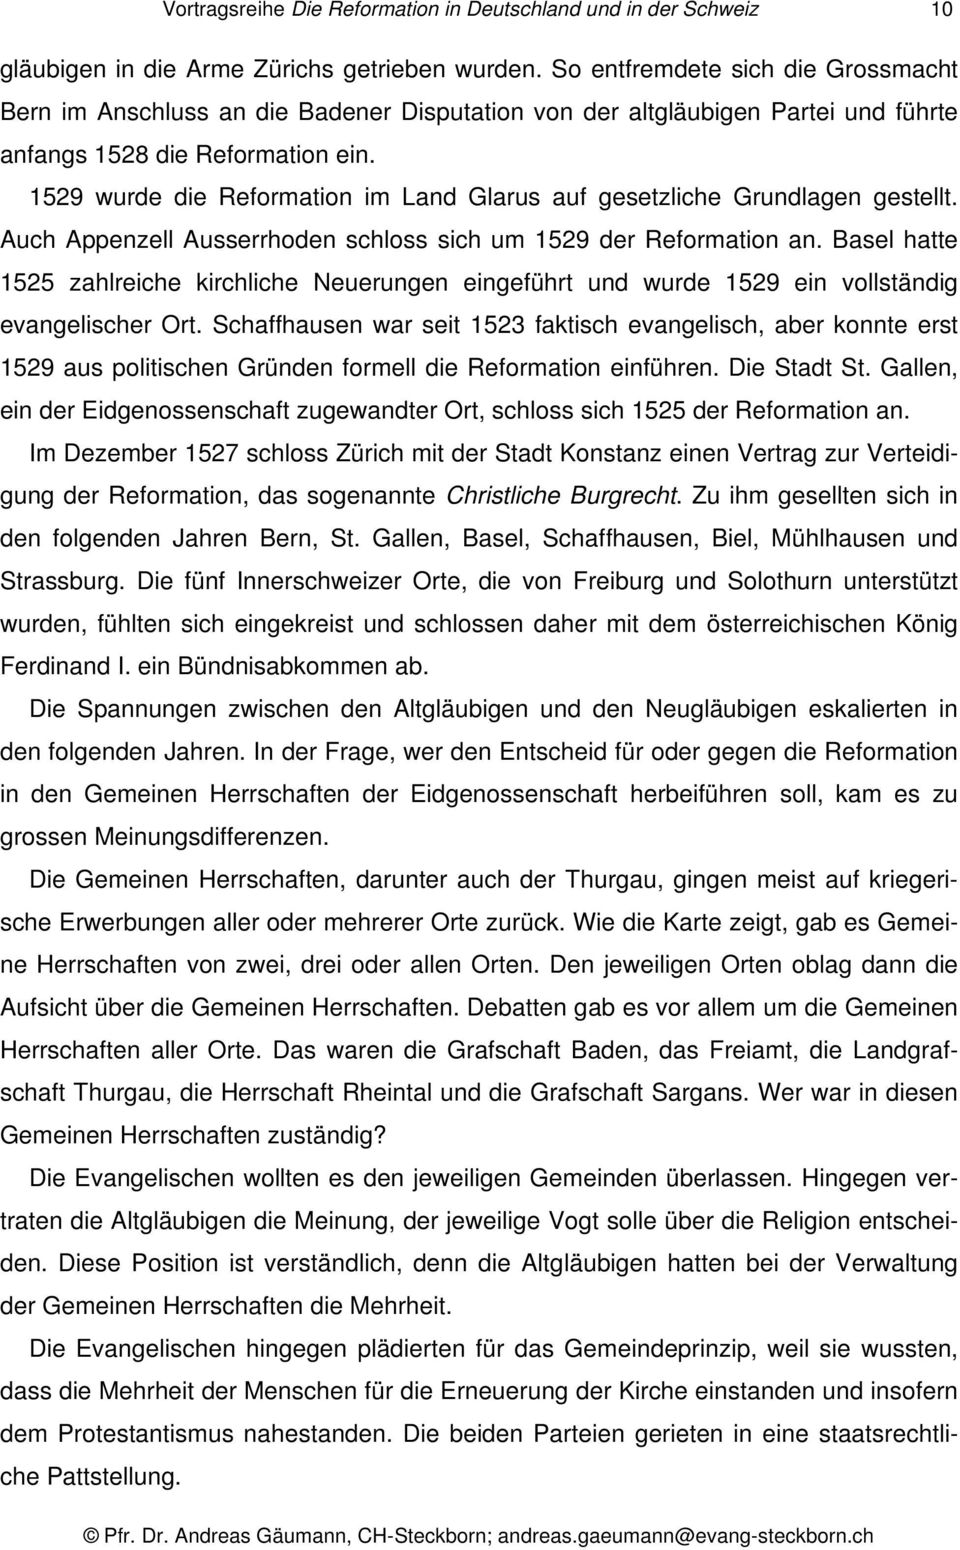 1529 wurde die Reformation im Land Glarus auf gesetzliche Grundlagen gestellt. Auch Appenzell Ausserrhoden schloss sich um 1529 der Reformation an.